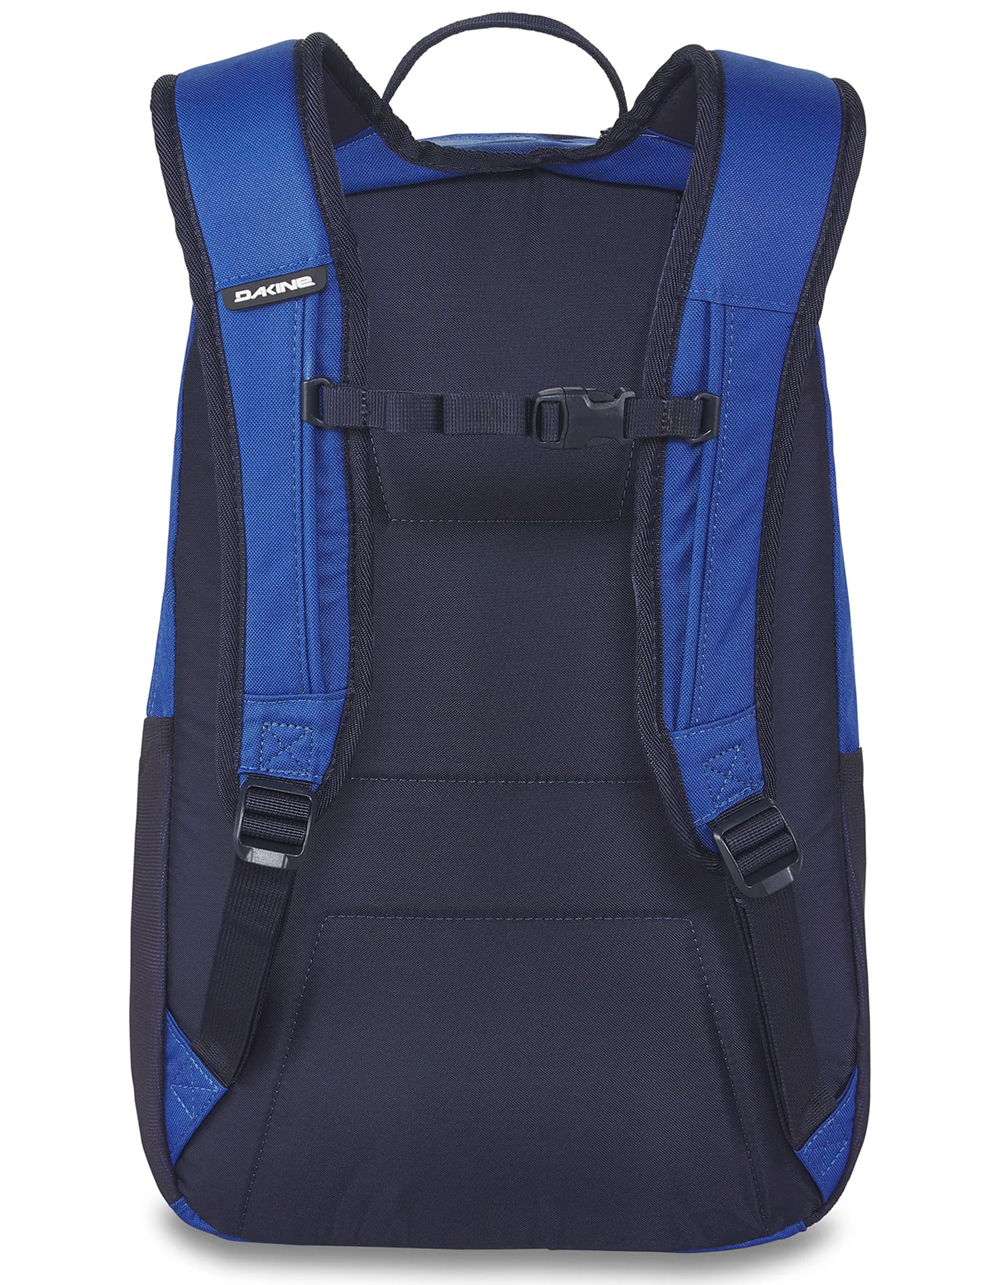 DAKINE 25 L Backpack - BLUE Tillys